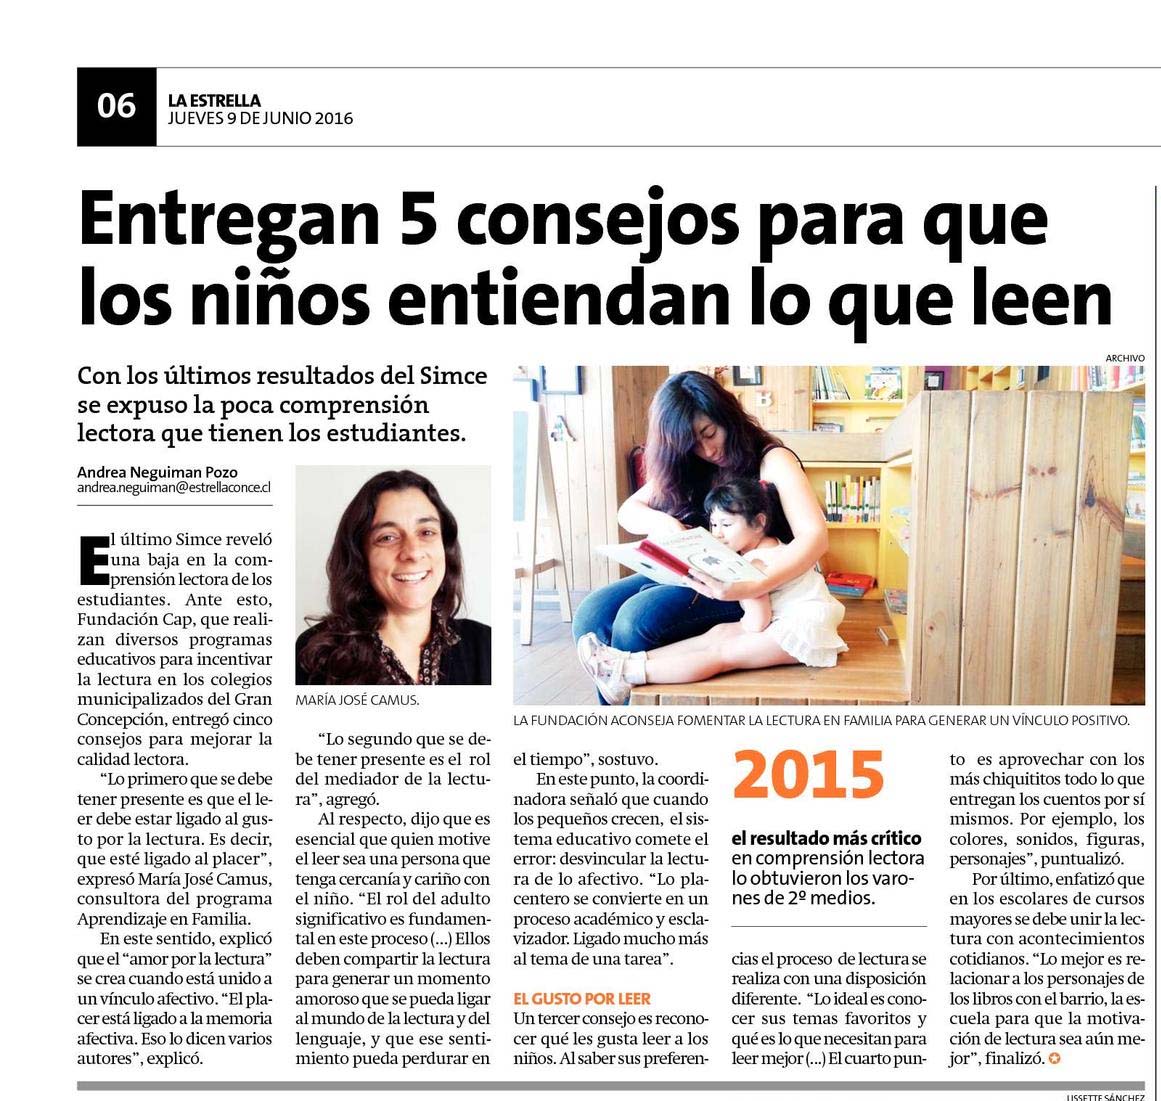 La Estrella, Crónica, 9 de junio de 2016